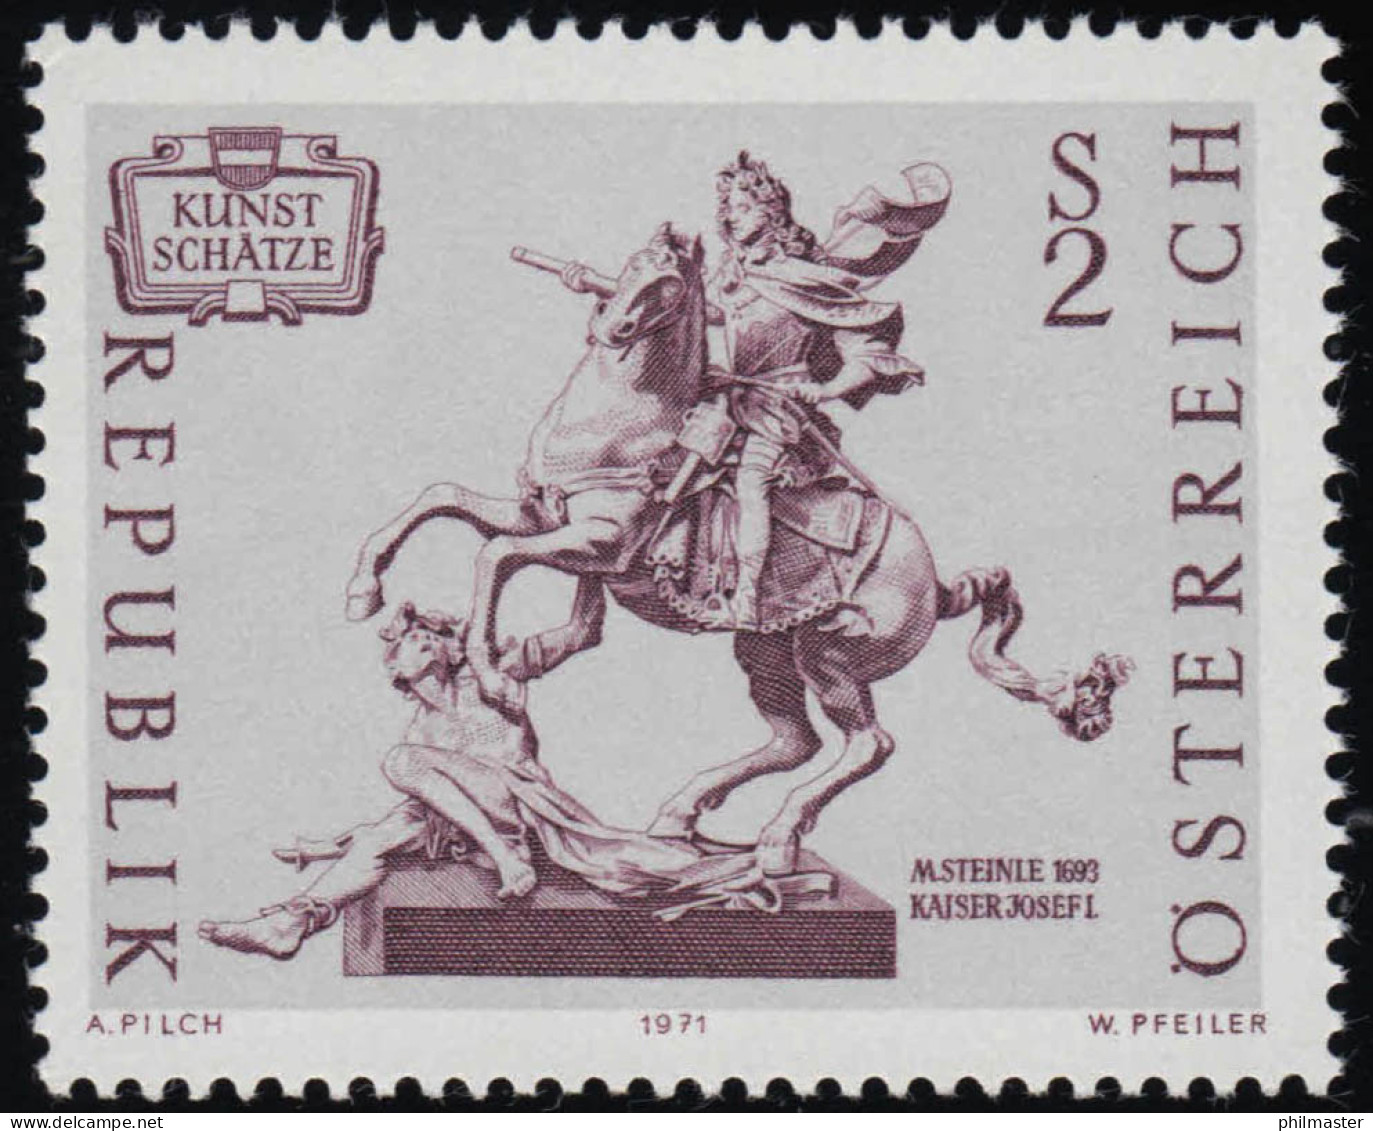 1356 Kunstschätze, Reiterstandbild Kaiser Josefs I., 2 S, Postfrisch ** - Ongebruikt